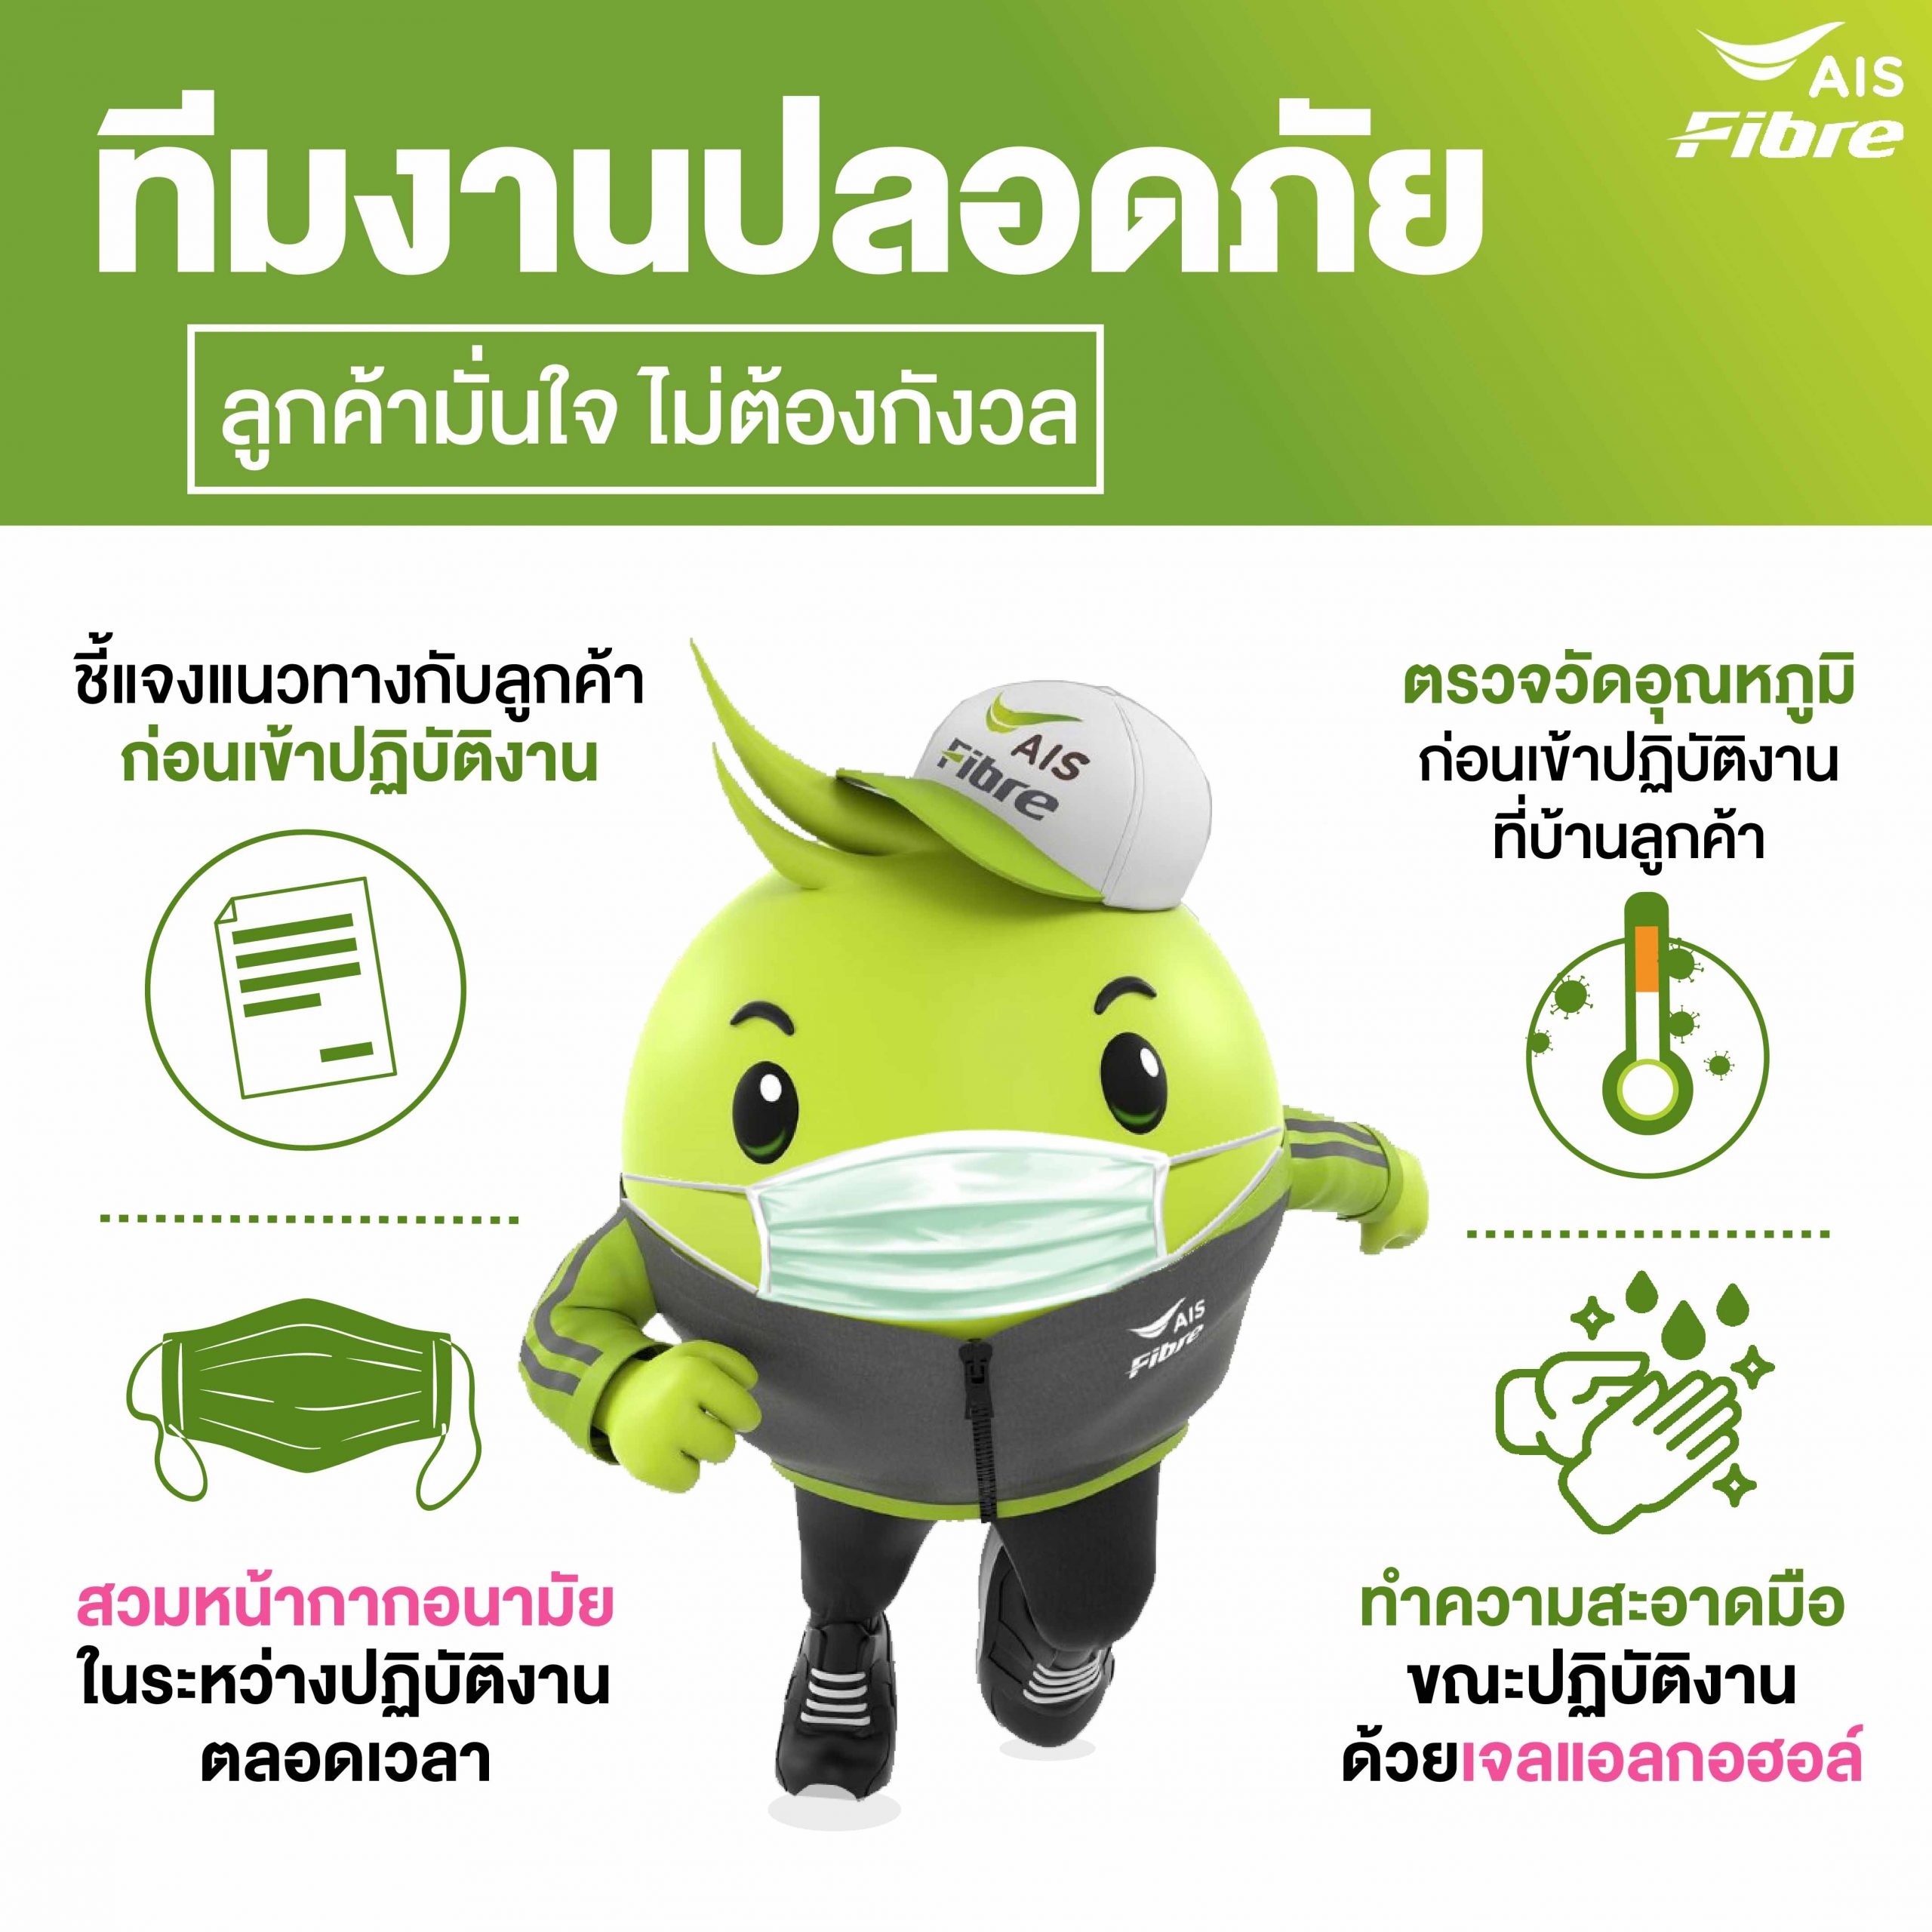 AIS Fibre พร้อมดูแลคนไทยใช้เน็ตบ้านไร้กังวล เข้ม!!!มาตรฐานความปลอดภัย 100% ของทีมช่างติดตั้ง